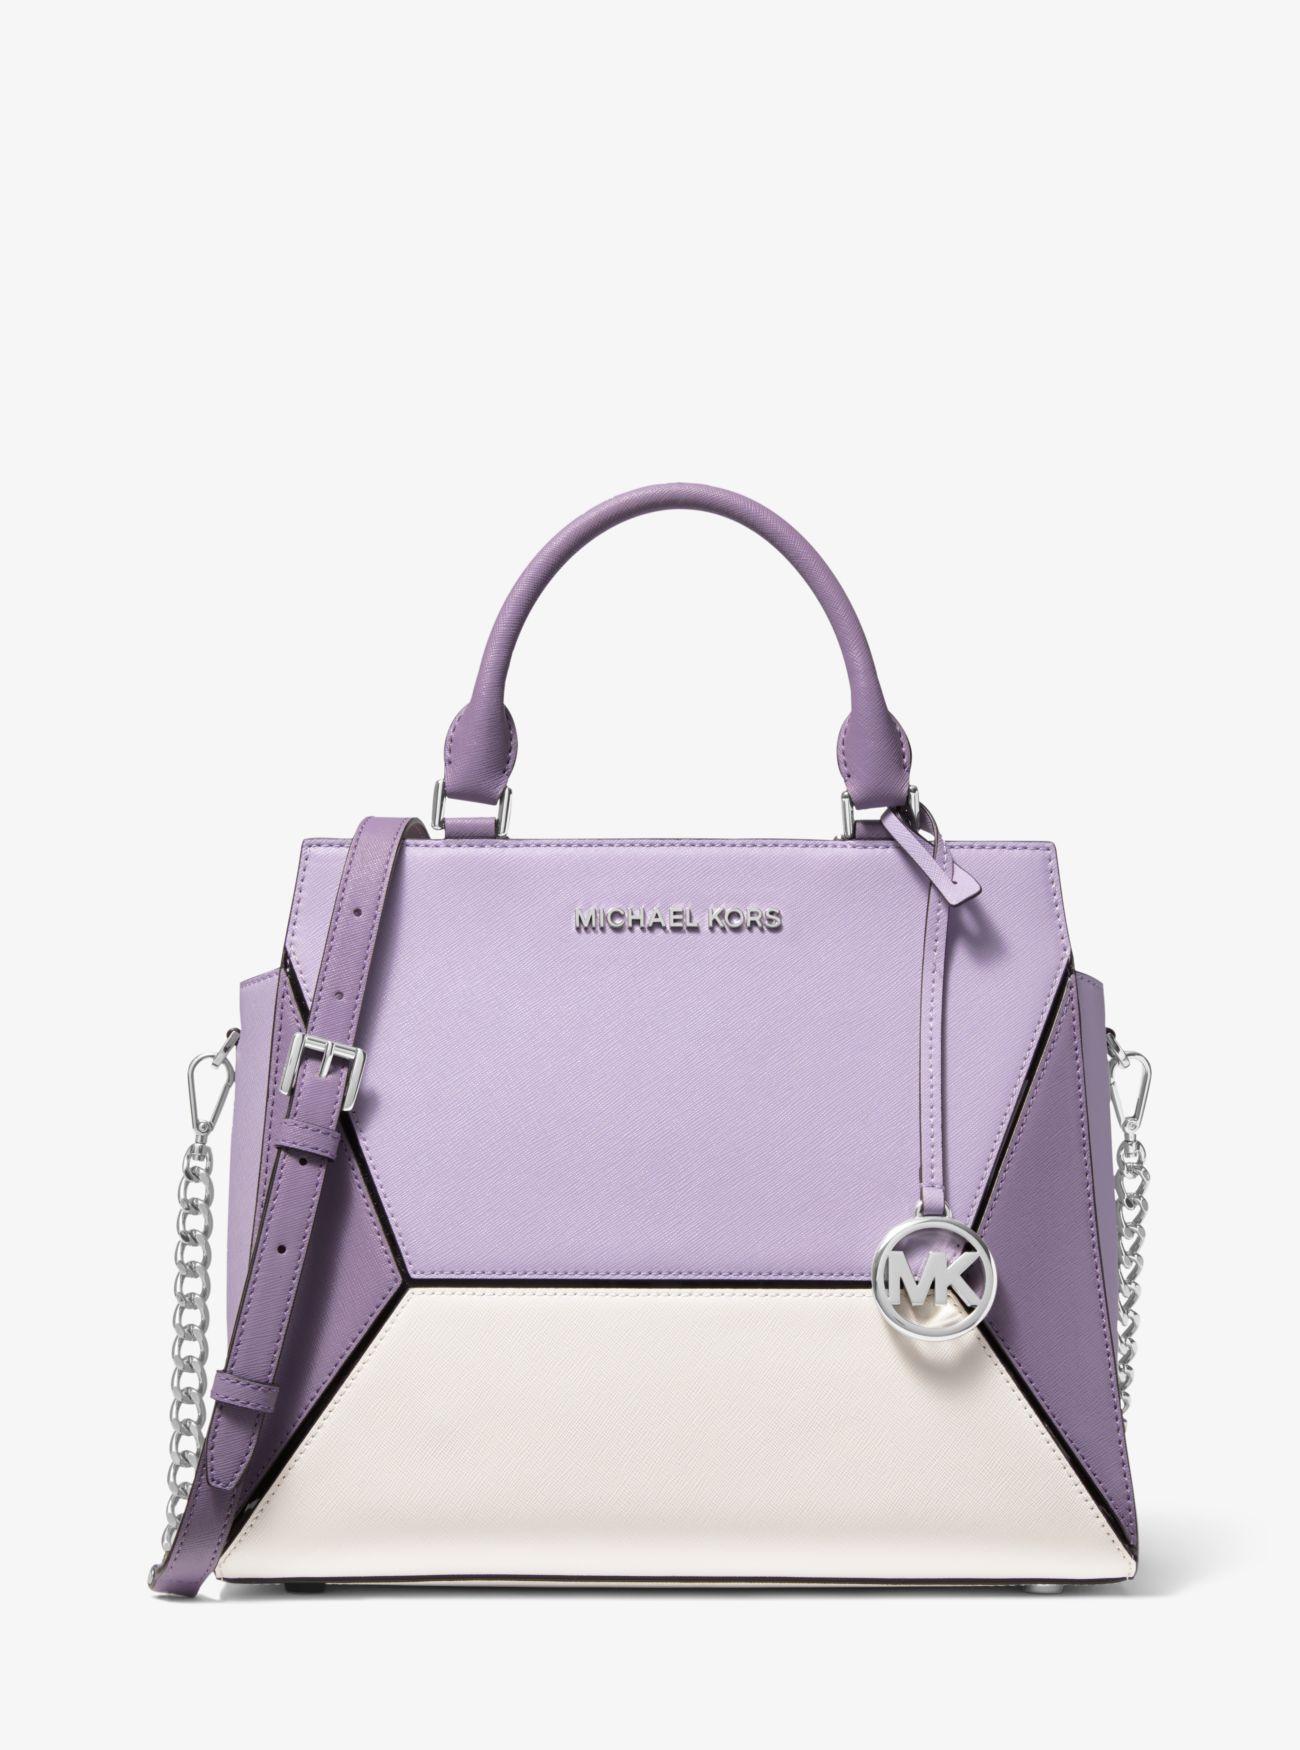 Michael Kors Lavender Bag on Sale, 56% OFF 